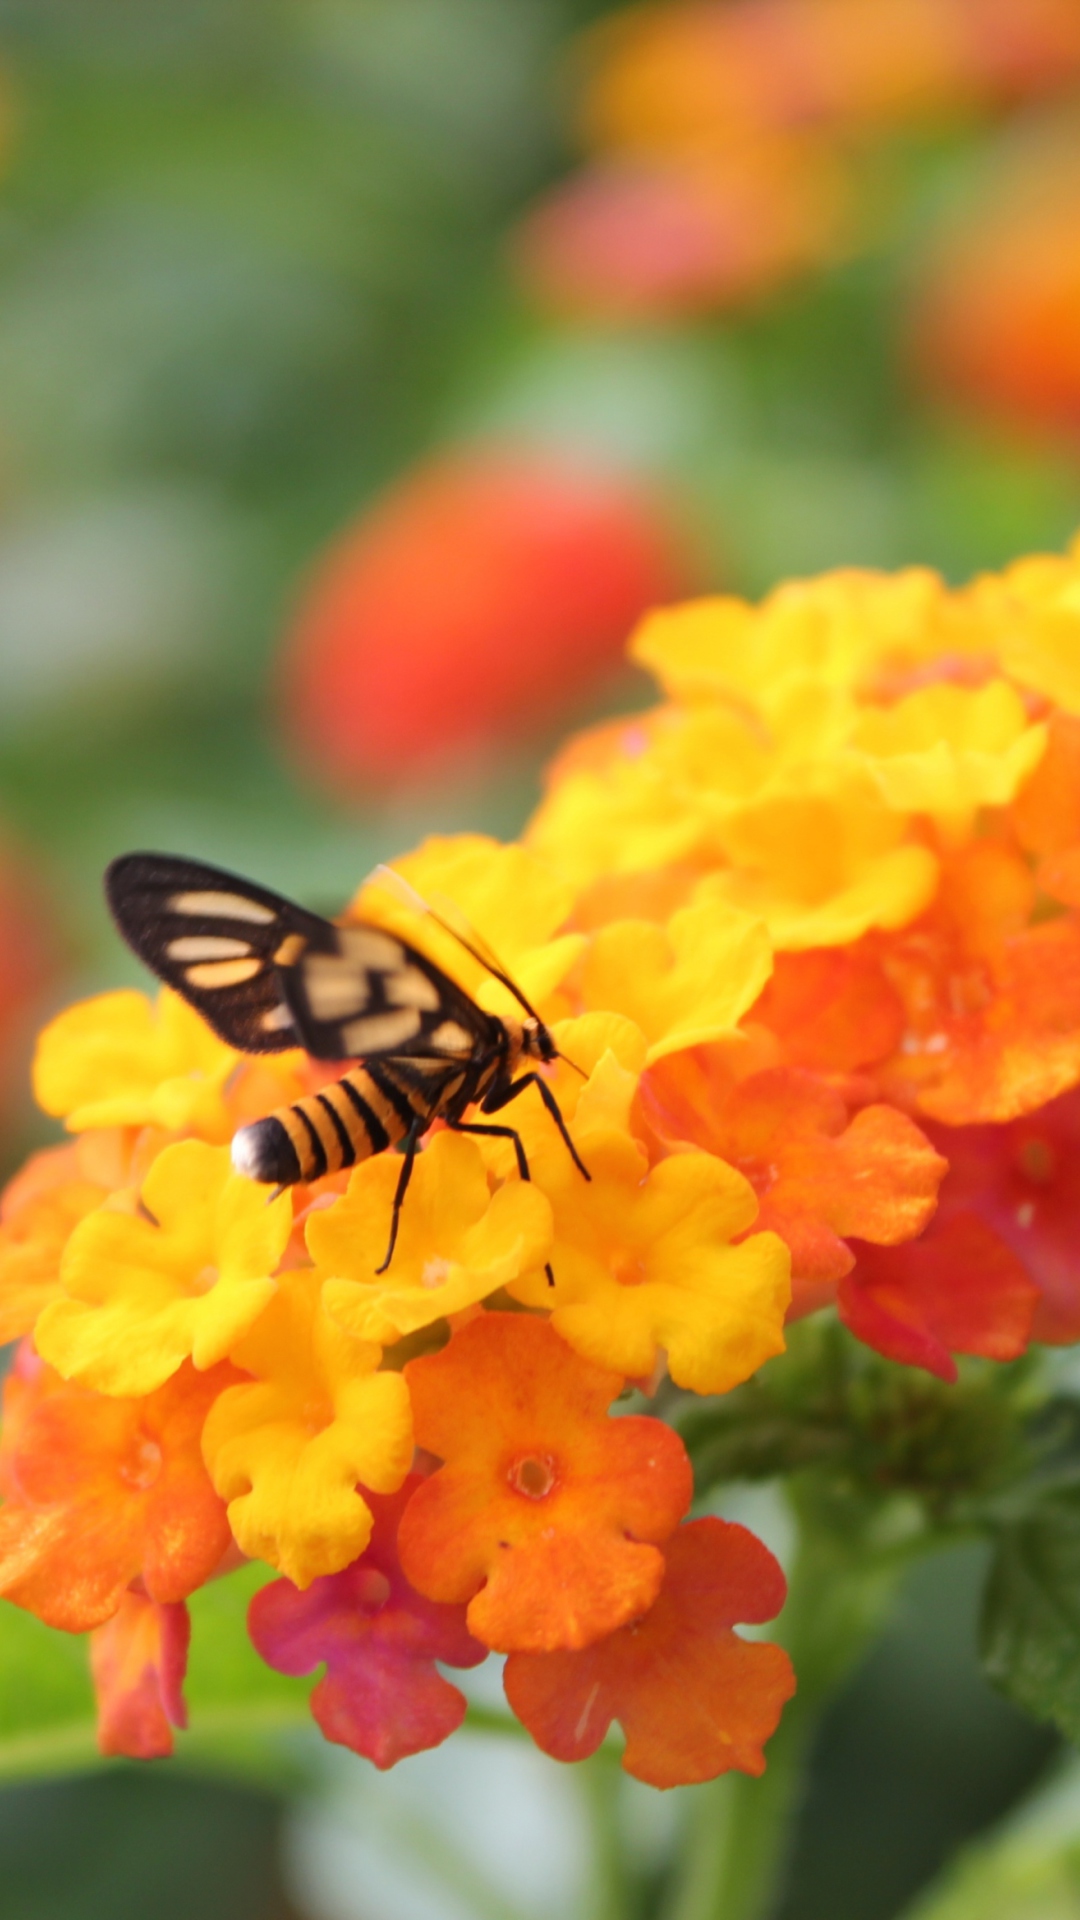 Обои Bee On Orange Flowers 1080x1920